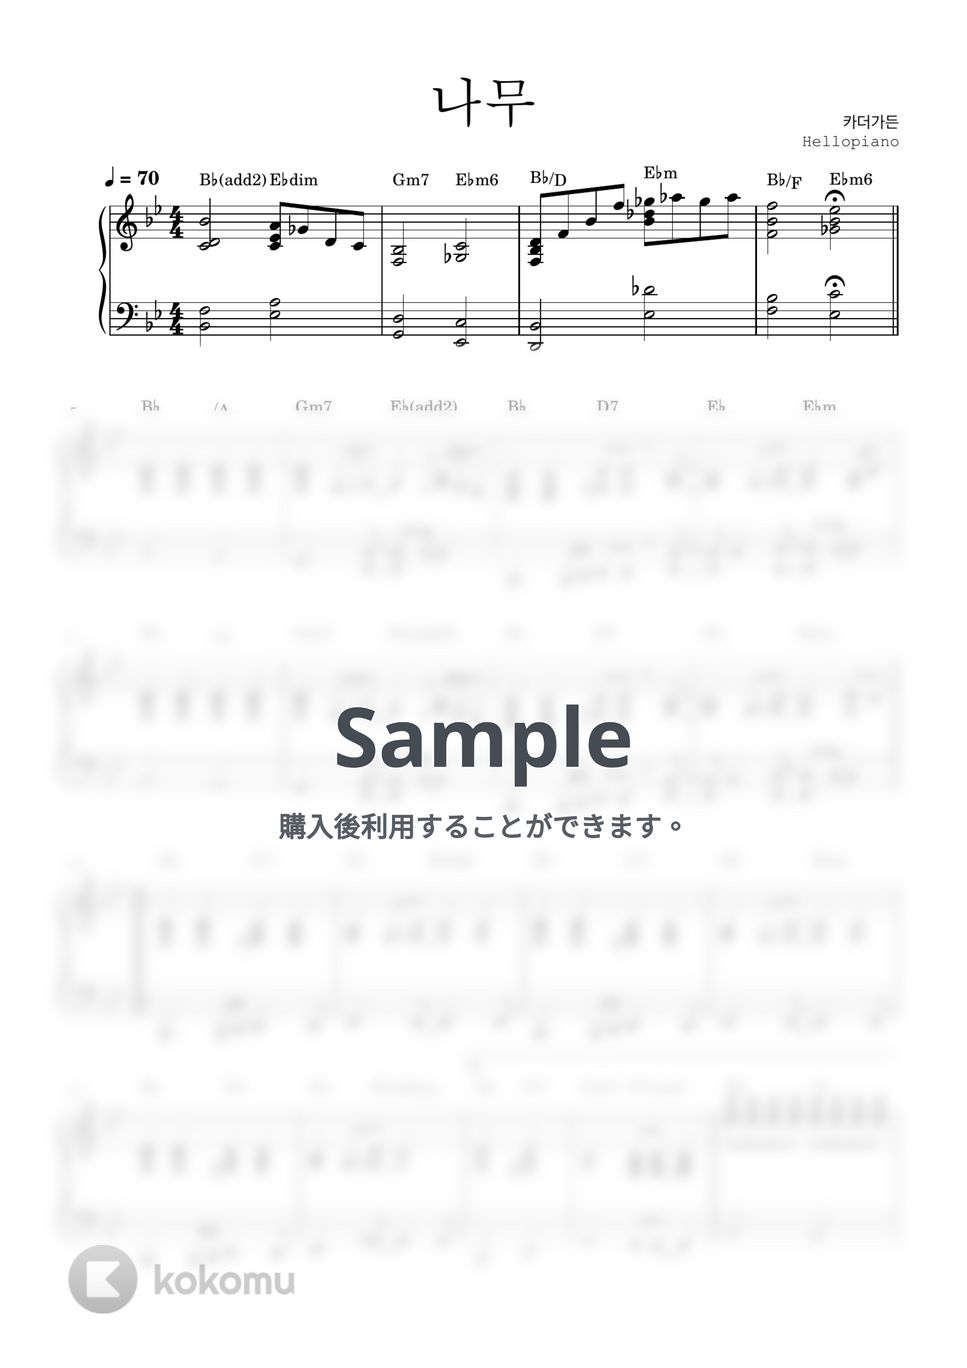 カーザガーデン - Tree (伴奏 ver.) by hellopiano